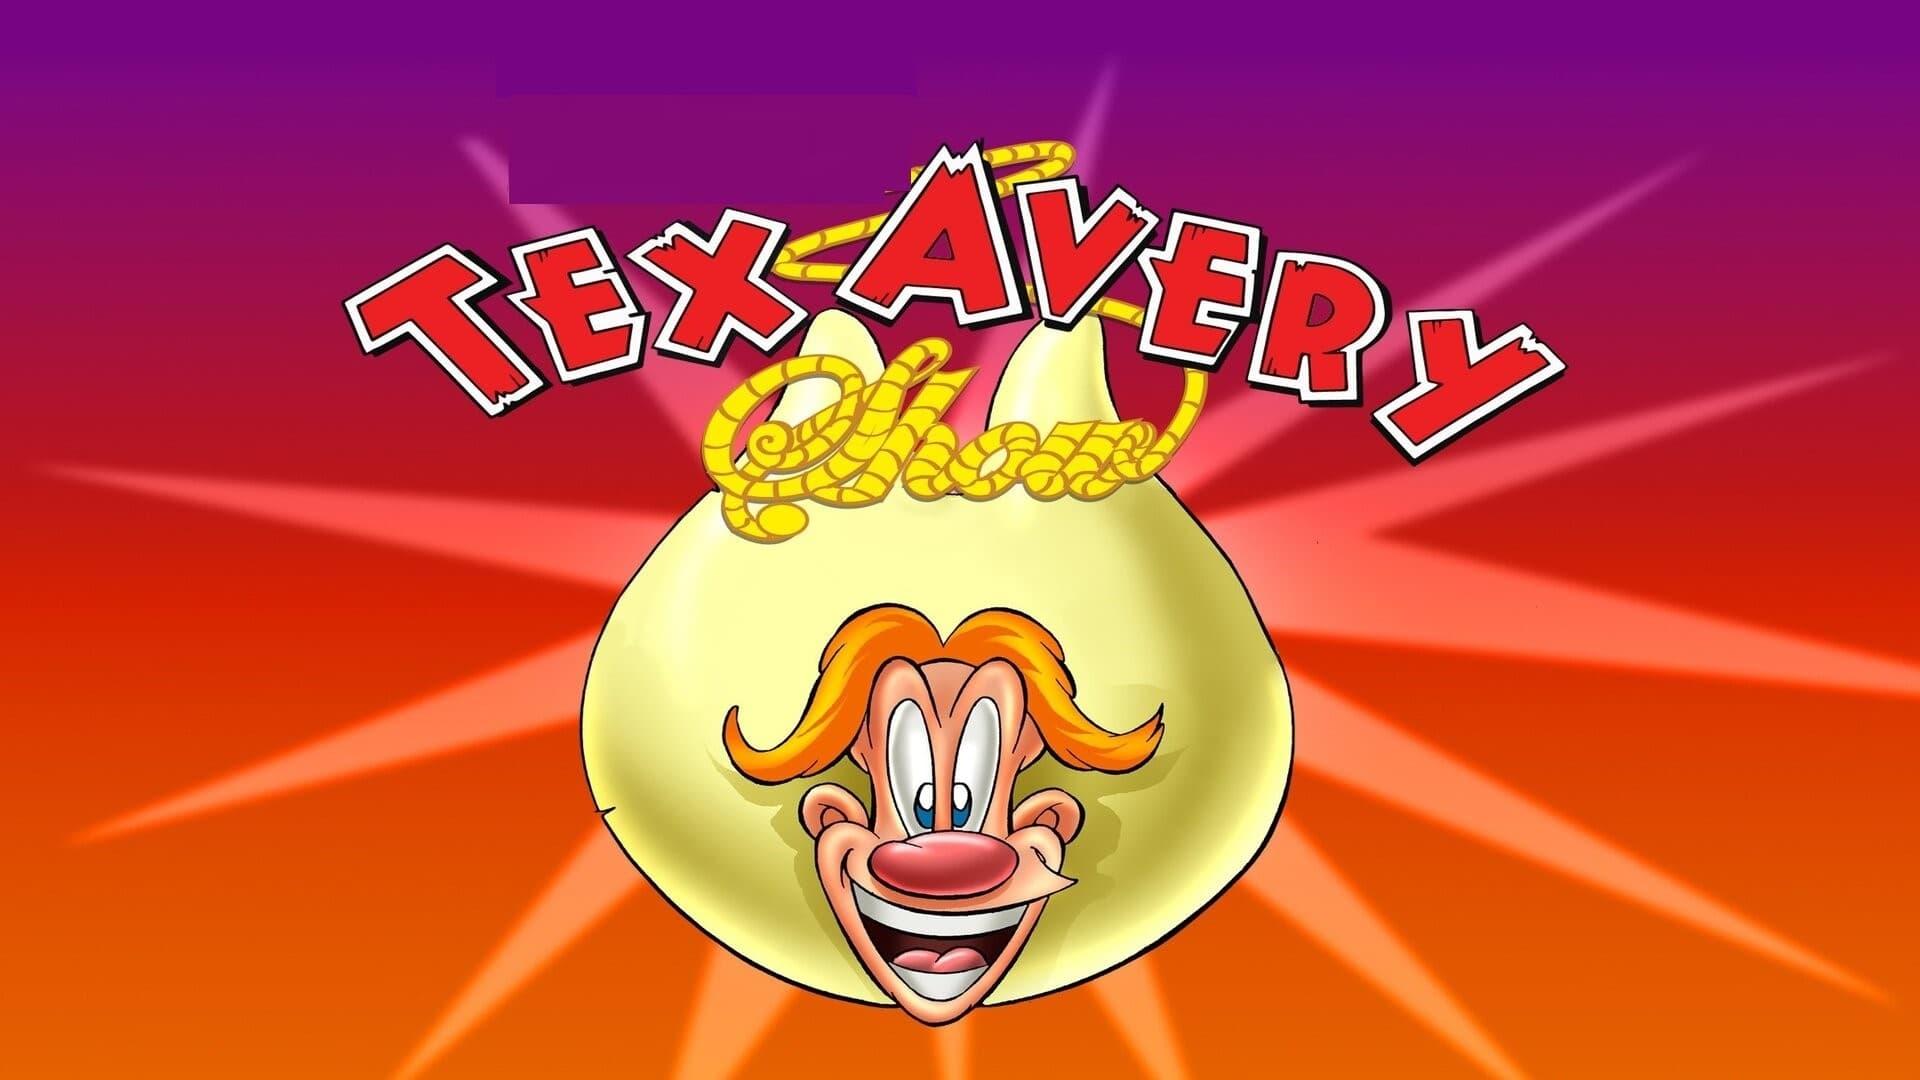 The Wacky World of Tex Avery backdrop